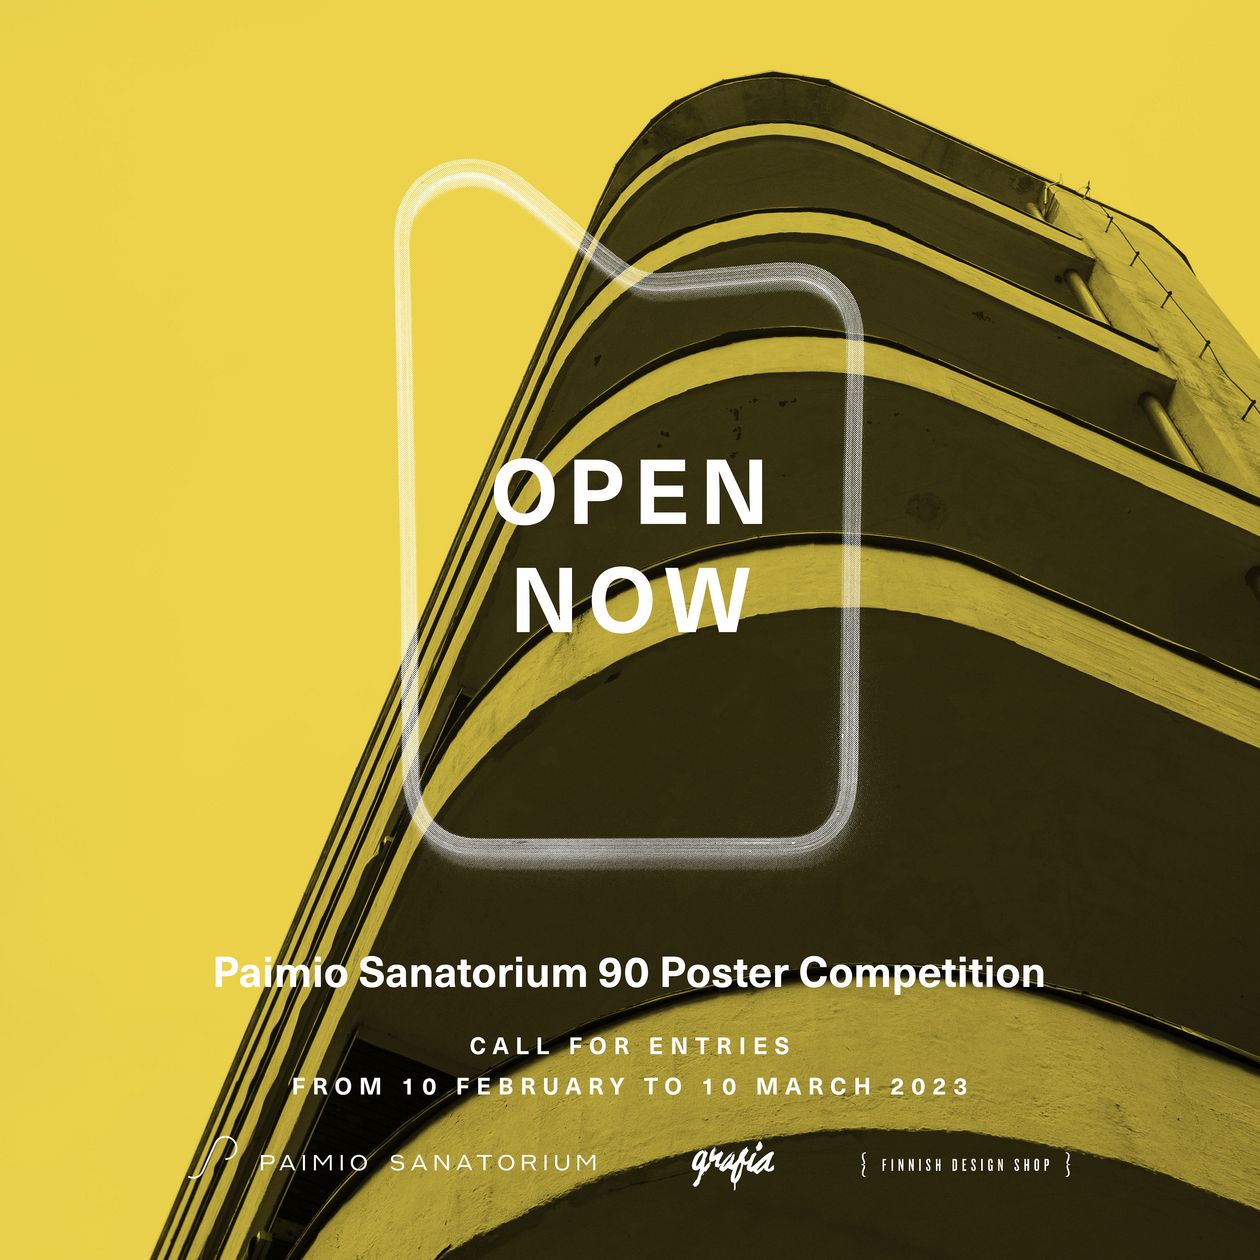 Paimio Sanatorium 90 poster competition